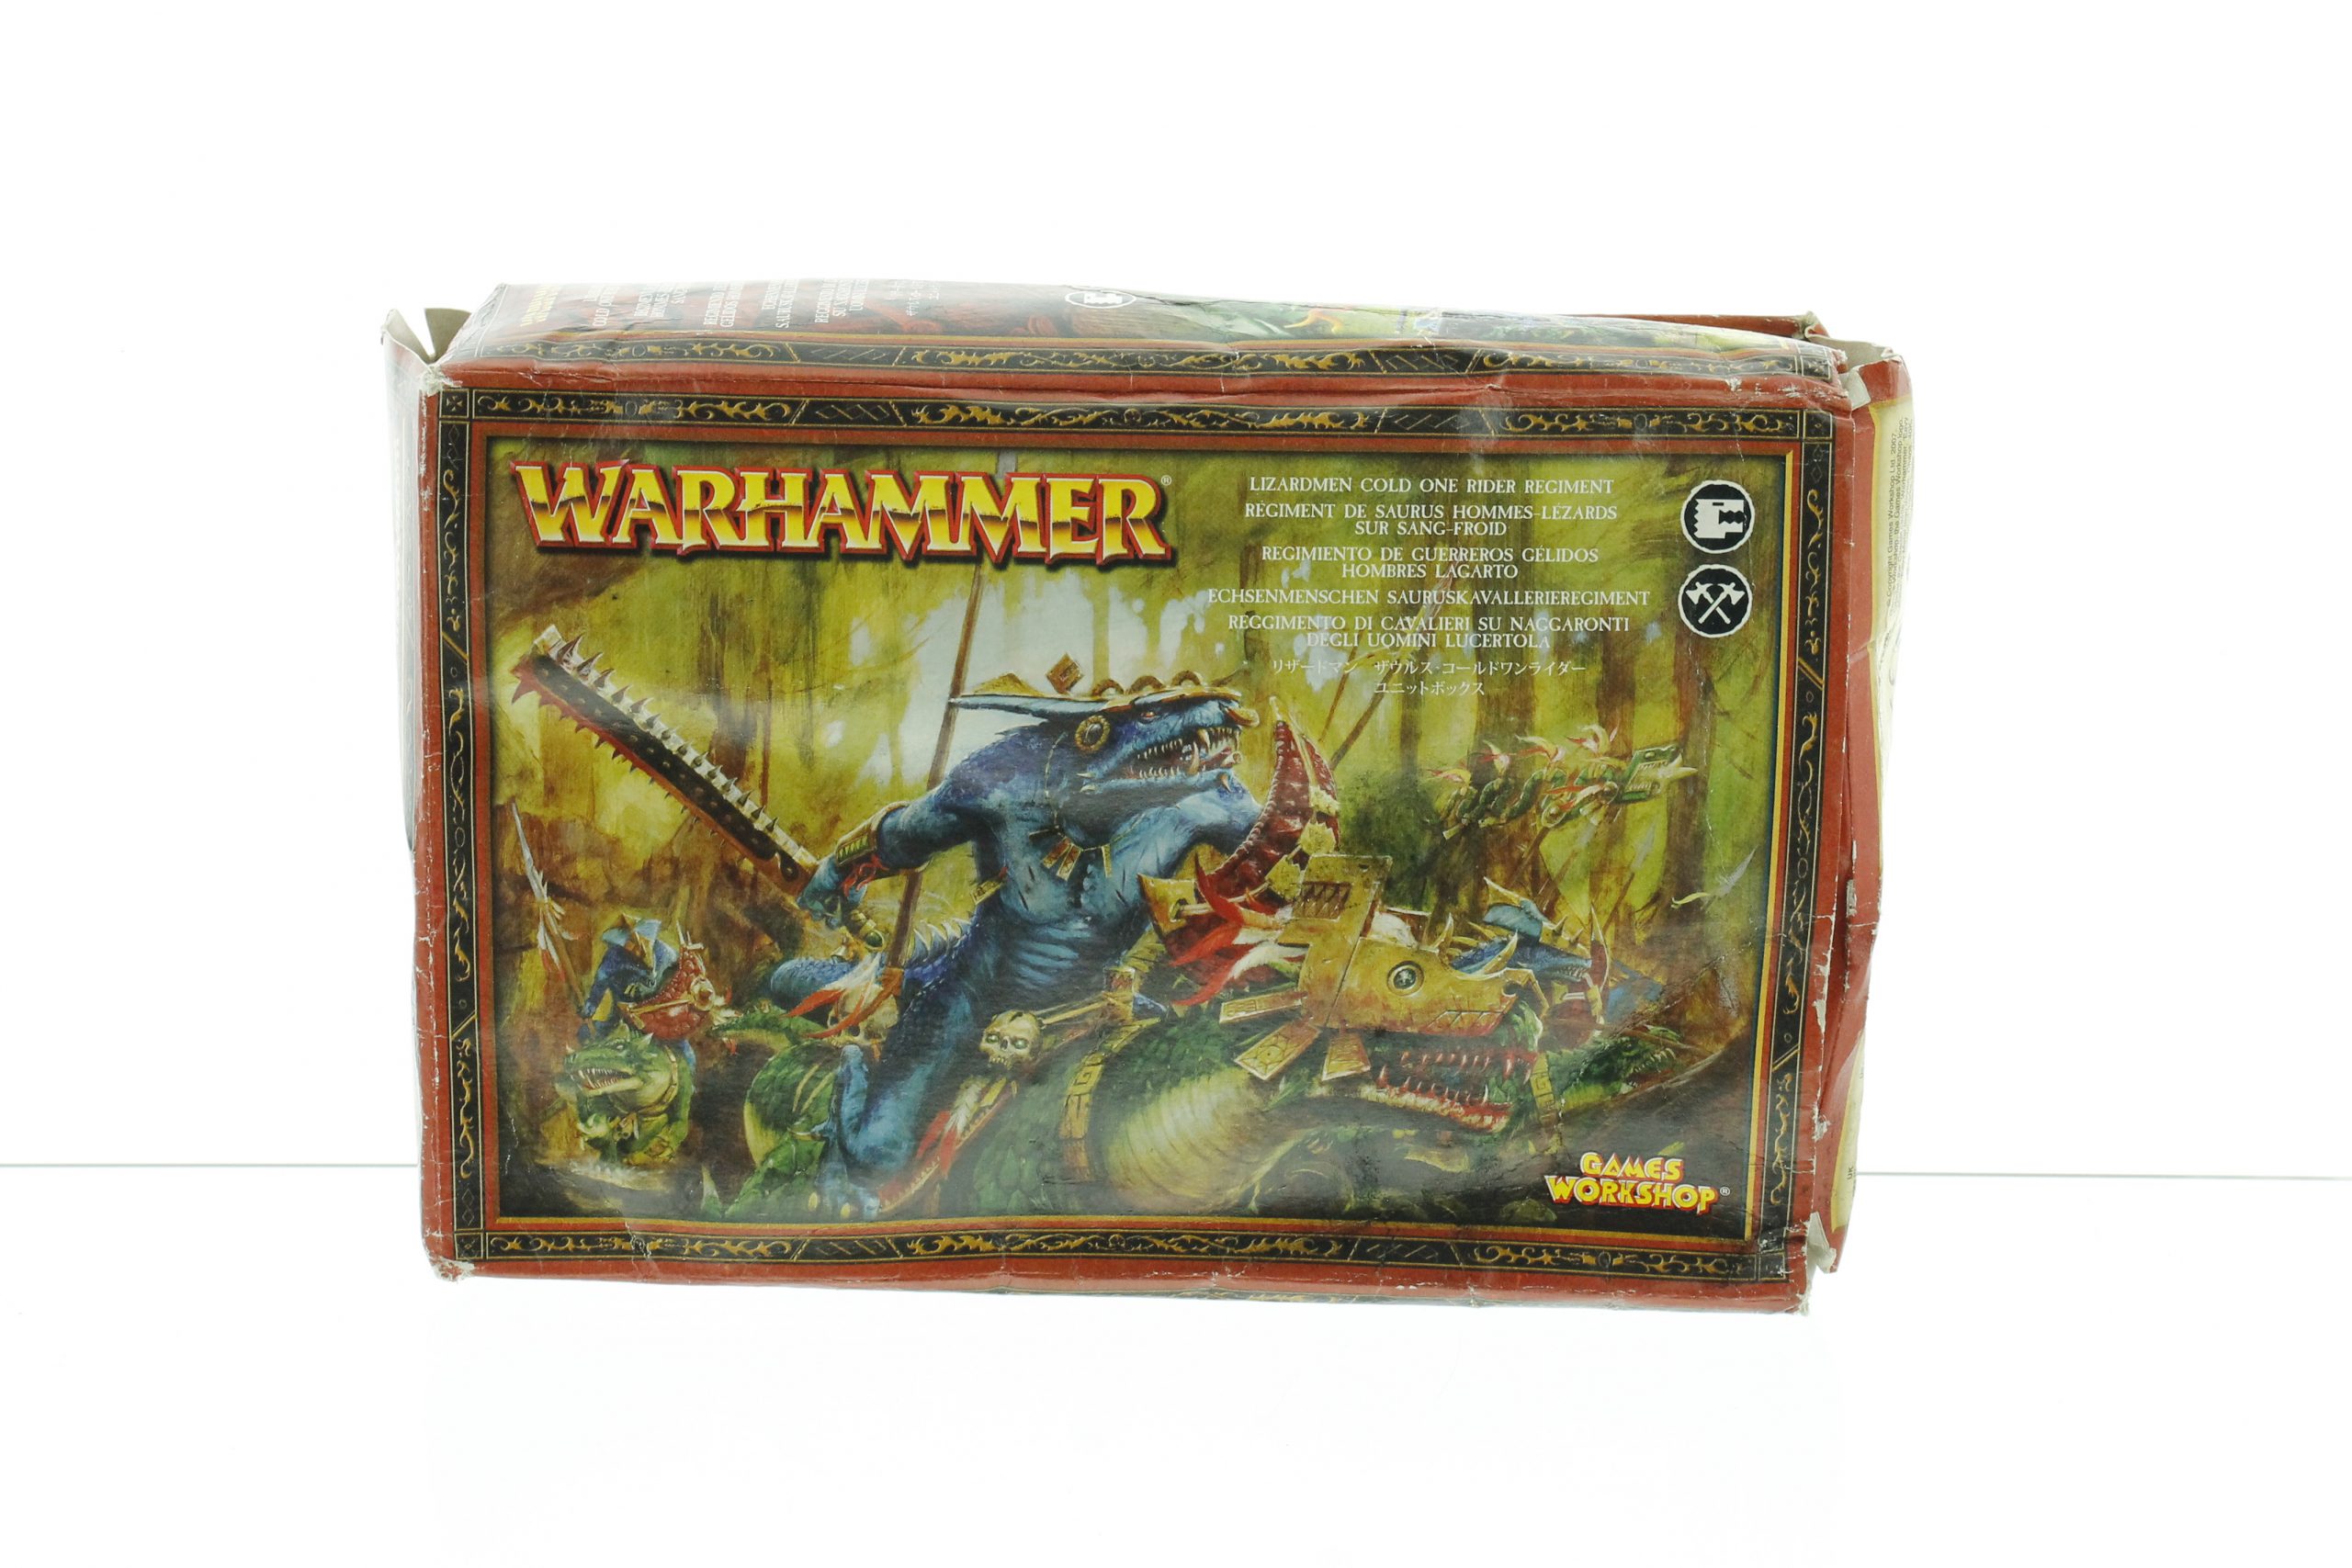 Warhammer Fantasy Lizardmen Cold One Rider Regiment | WHTREASURY